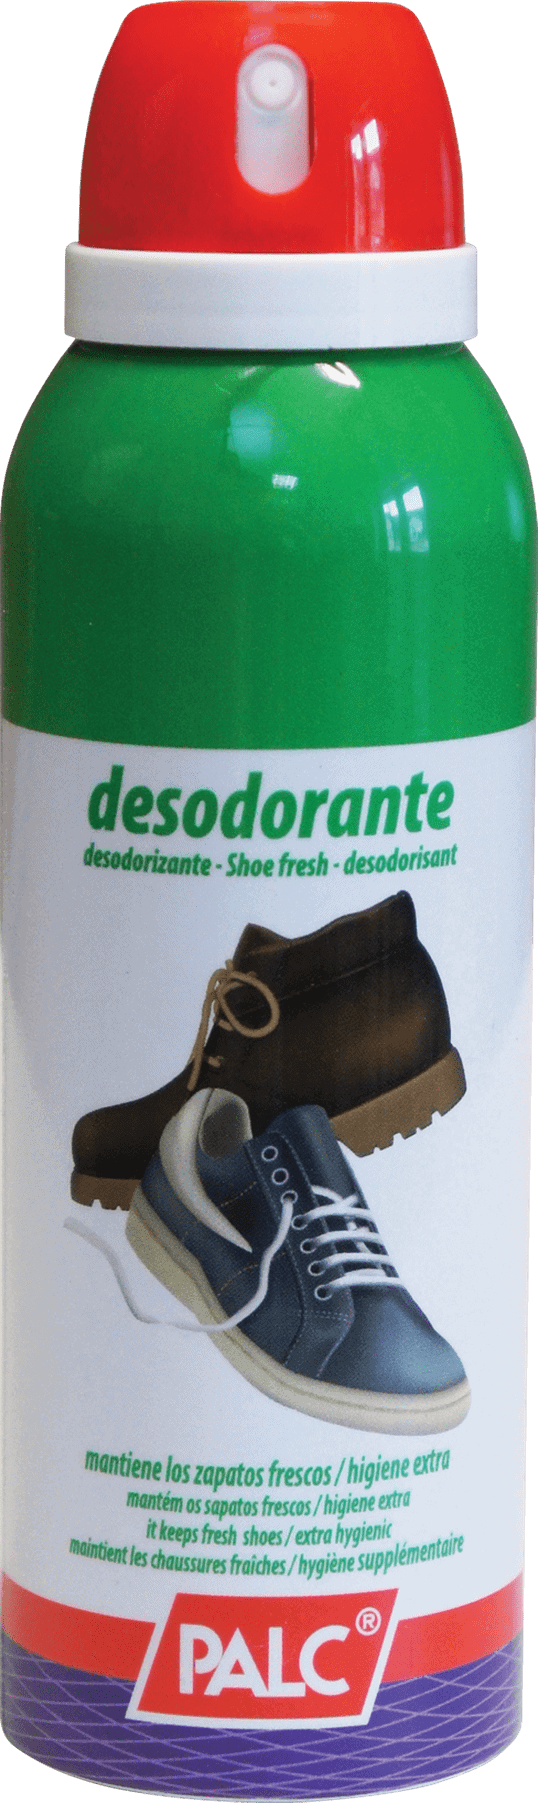 Deodorant do pracovní obuvi PALC 125ml